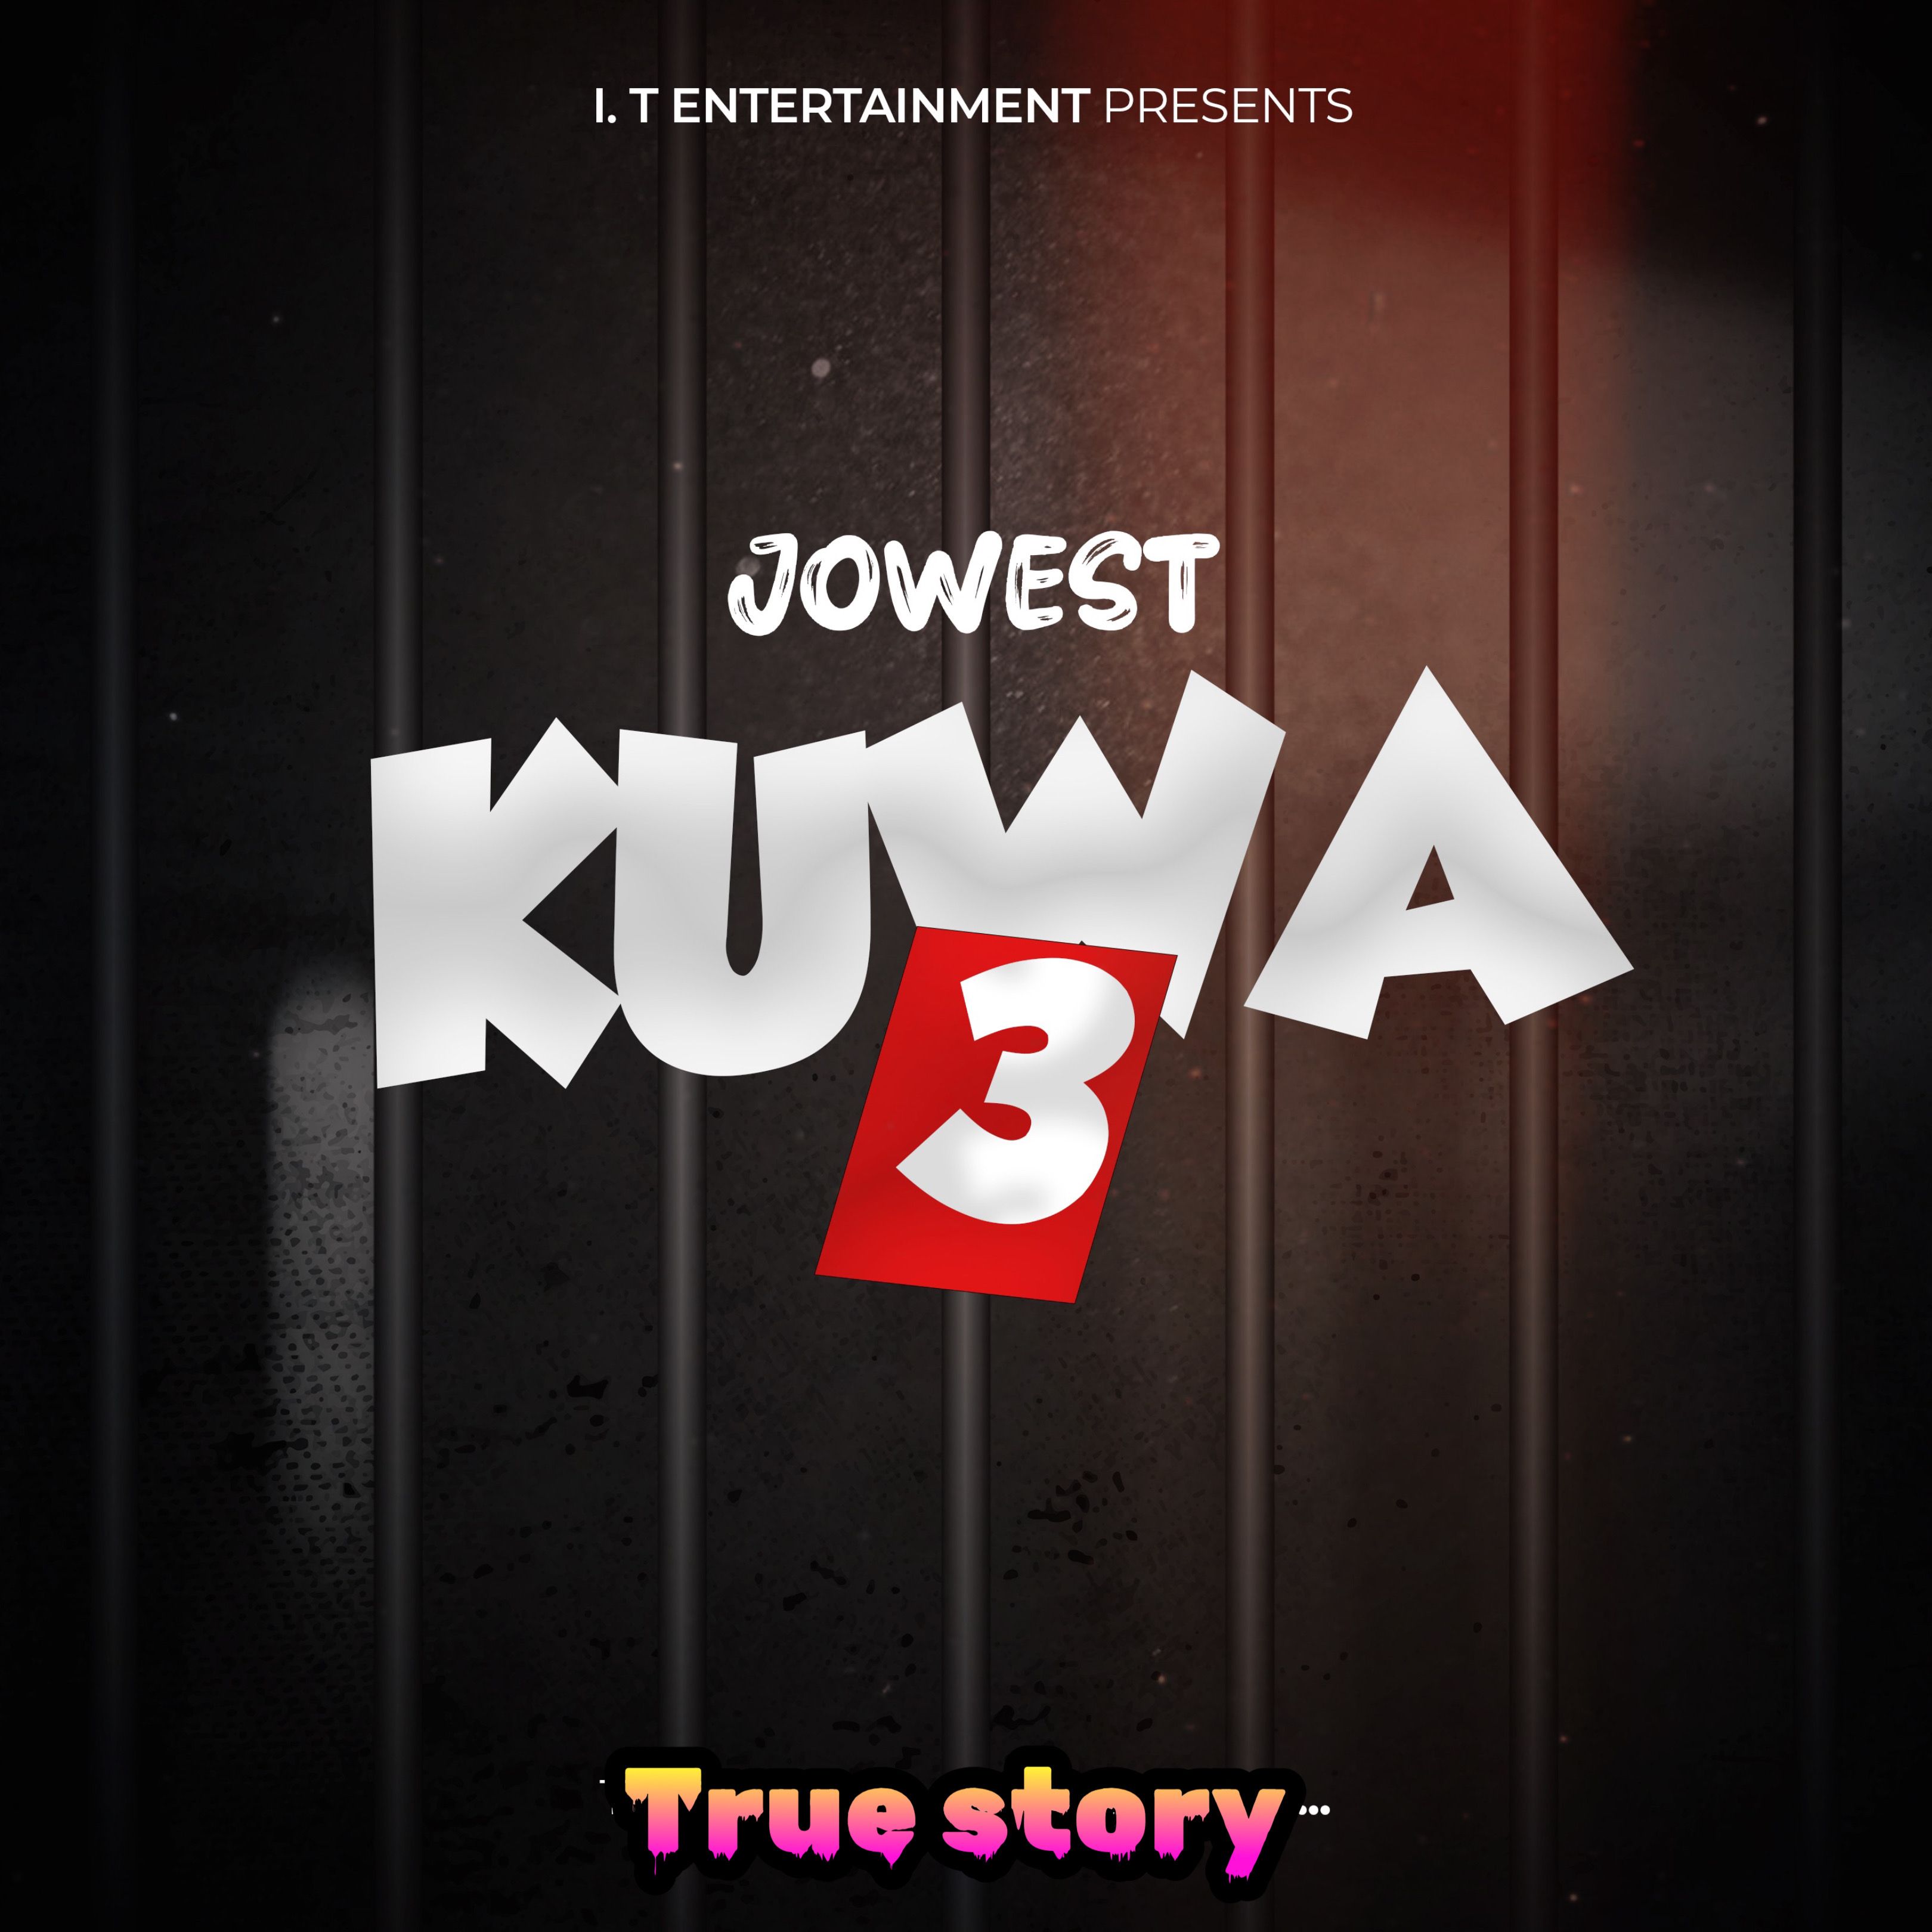 Jowest - KUWA 3